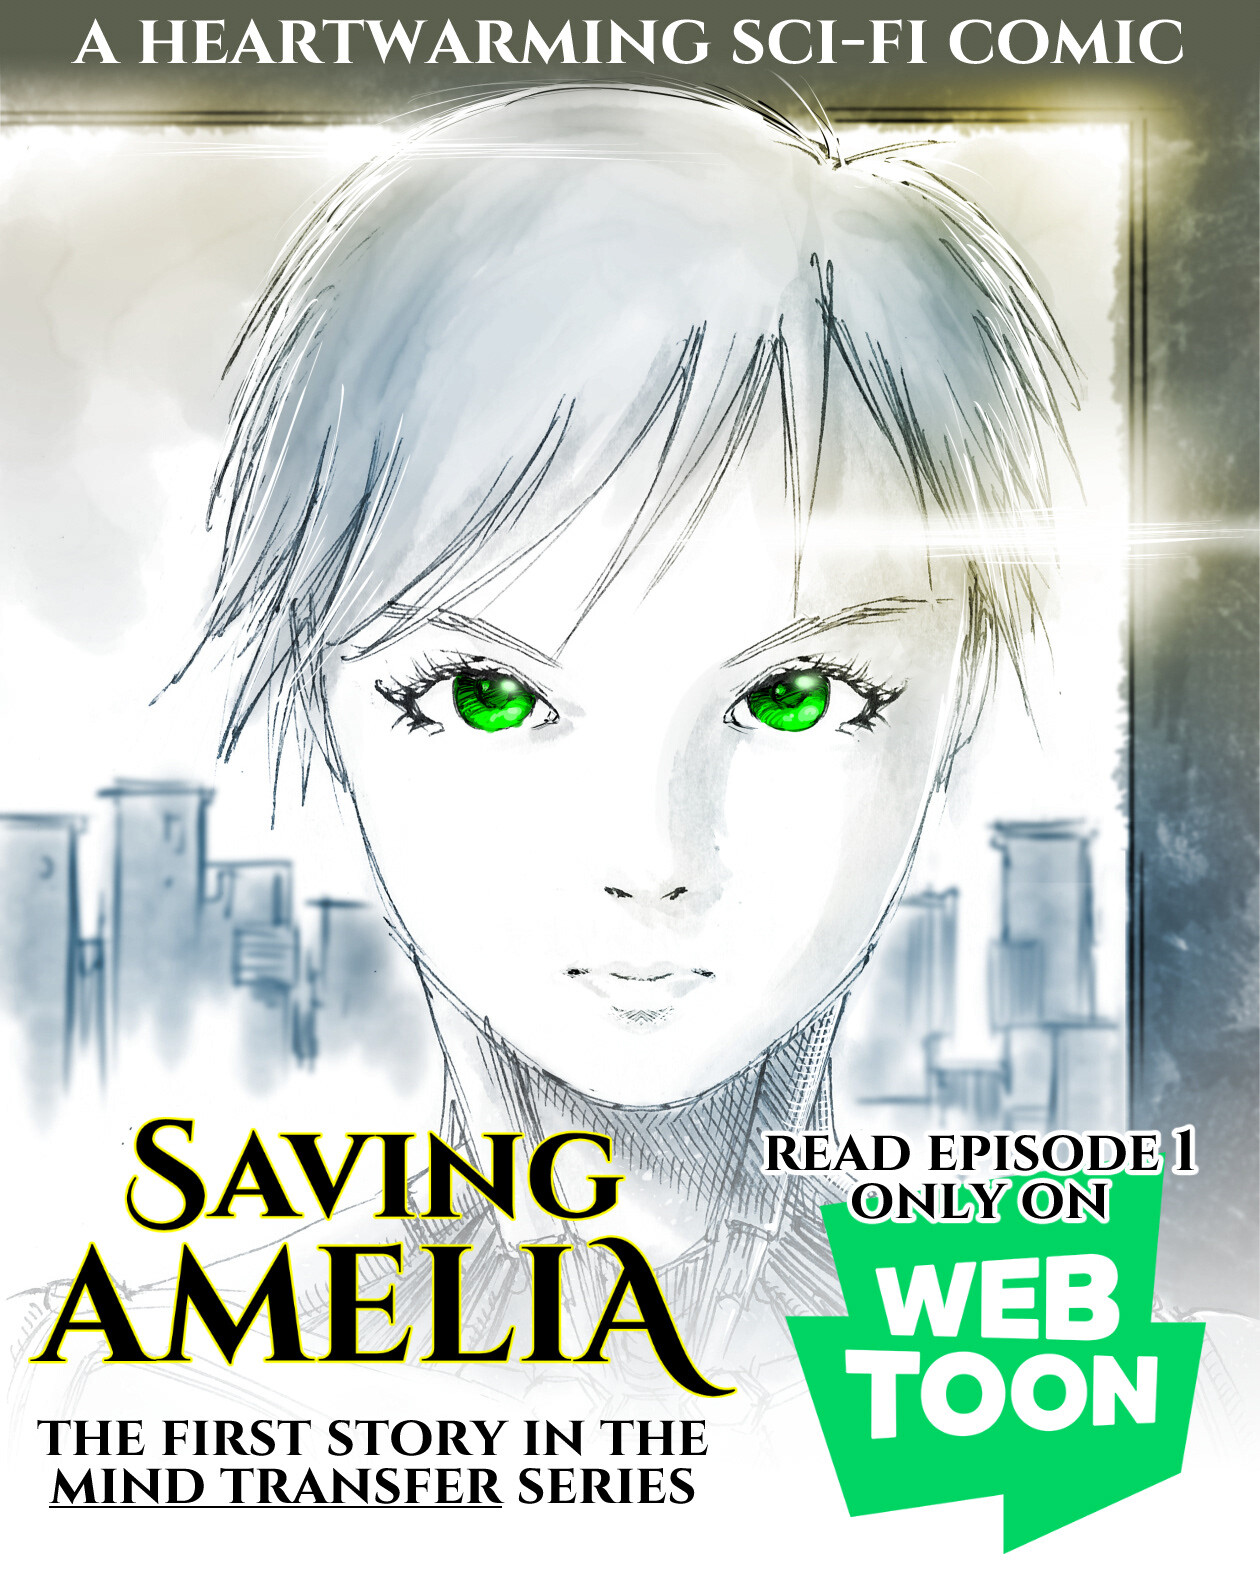 Webtoon "Saving Amelia"